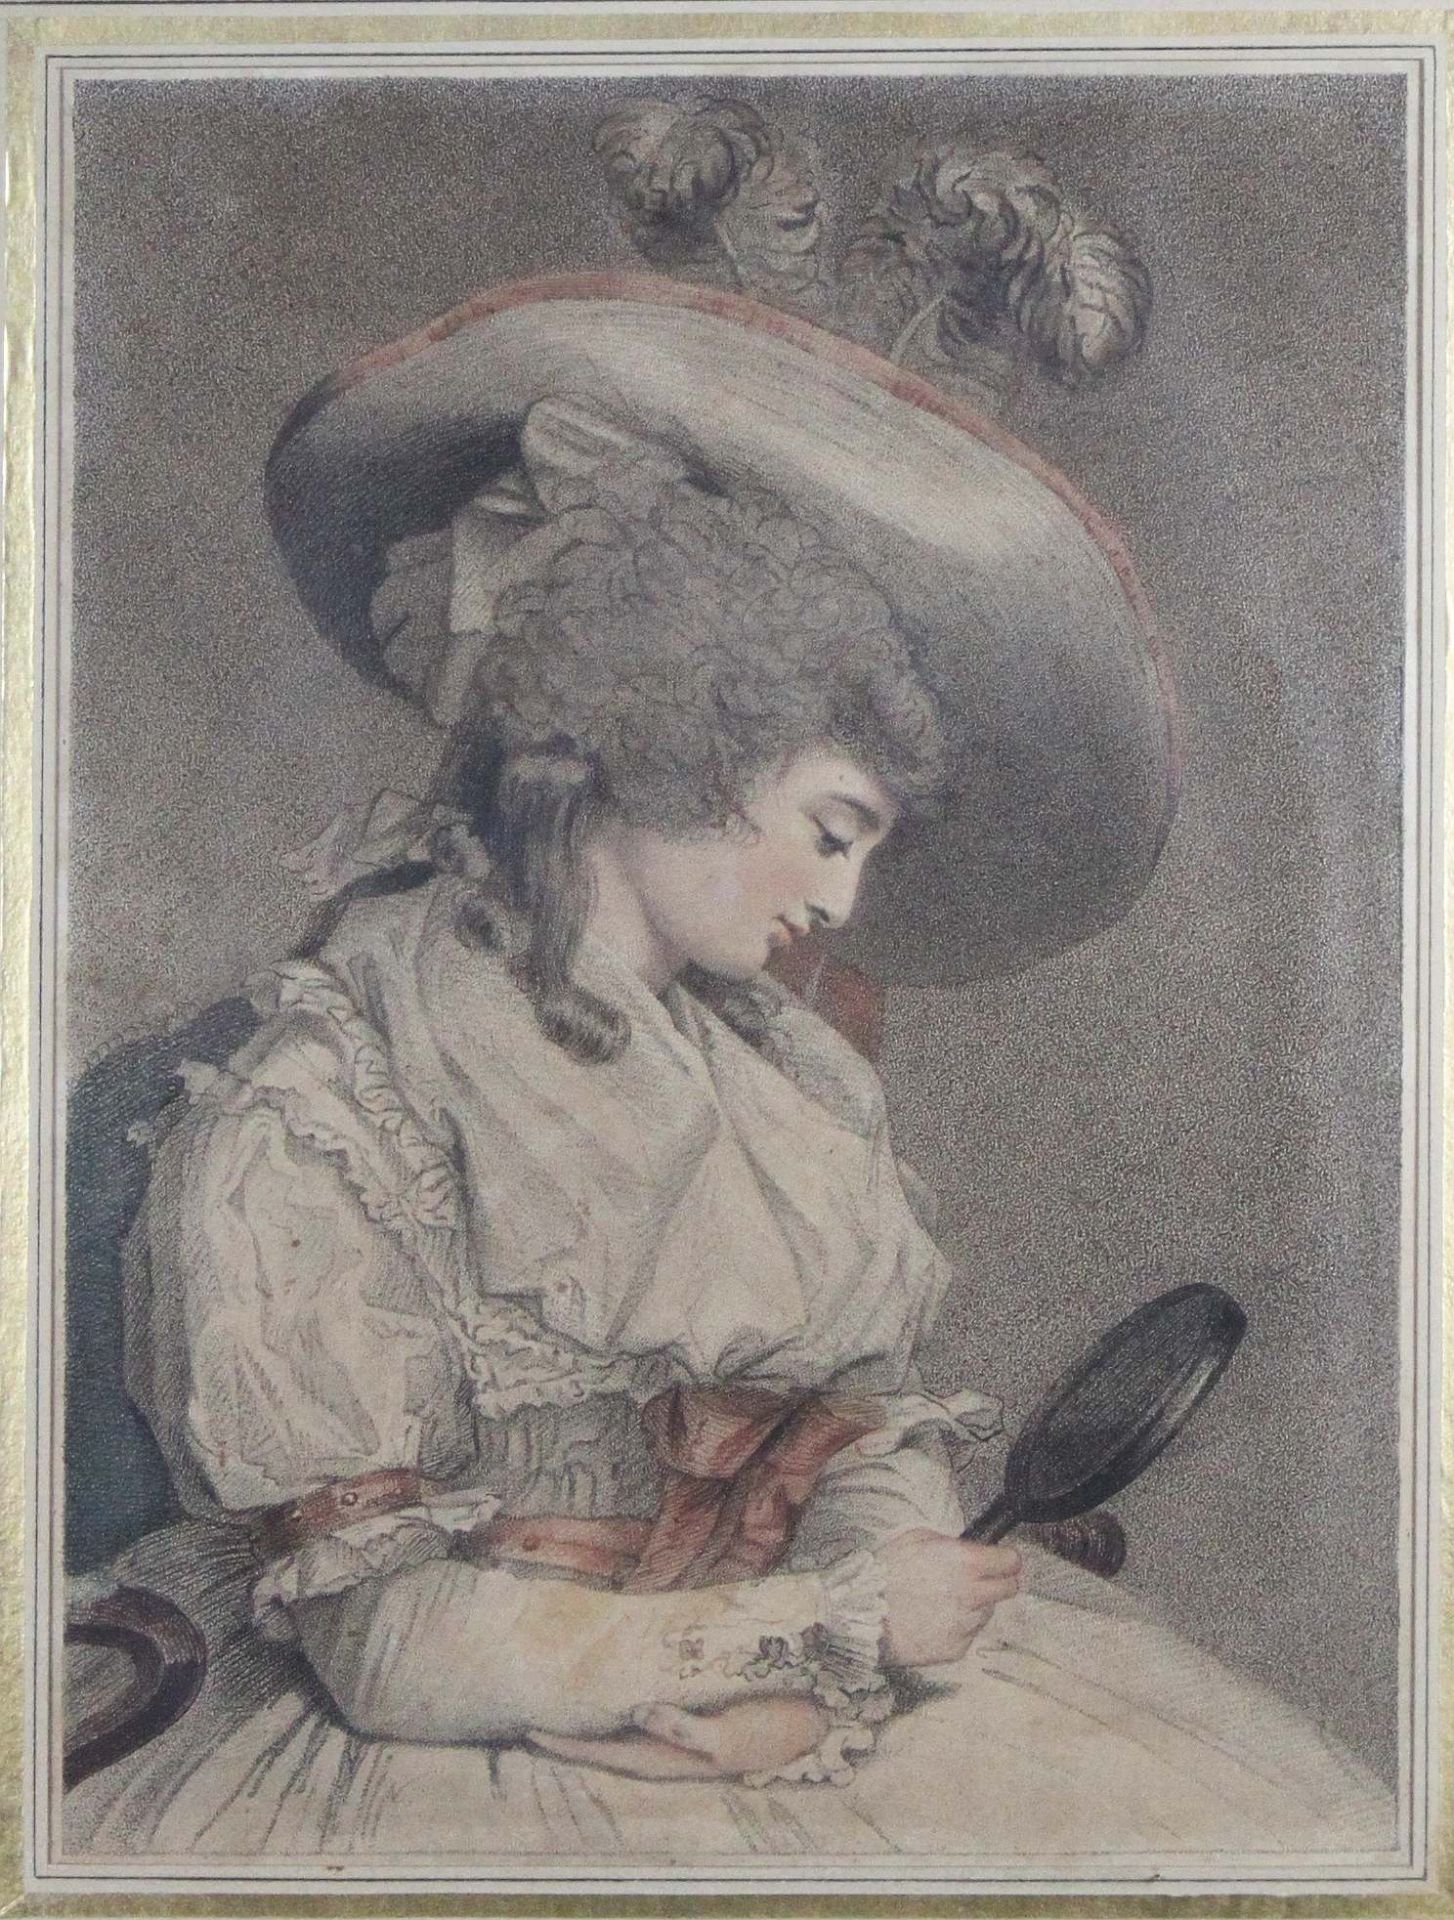 Porträt einer Dame mit Spiegel, kolorierte Radierung, um 1800, Plattenmaße: 26 x 19,5 cm